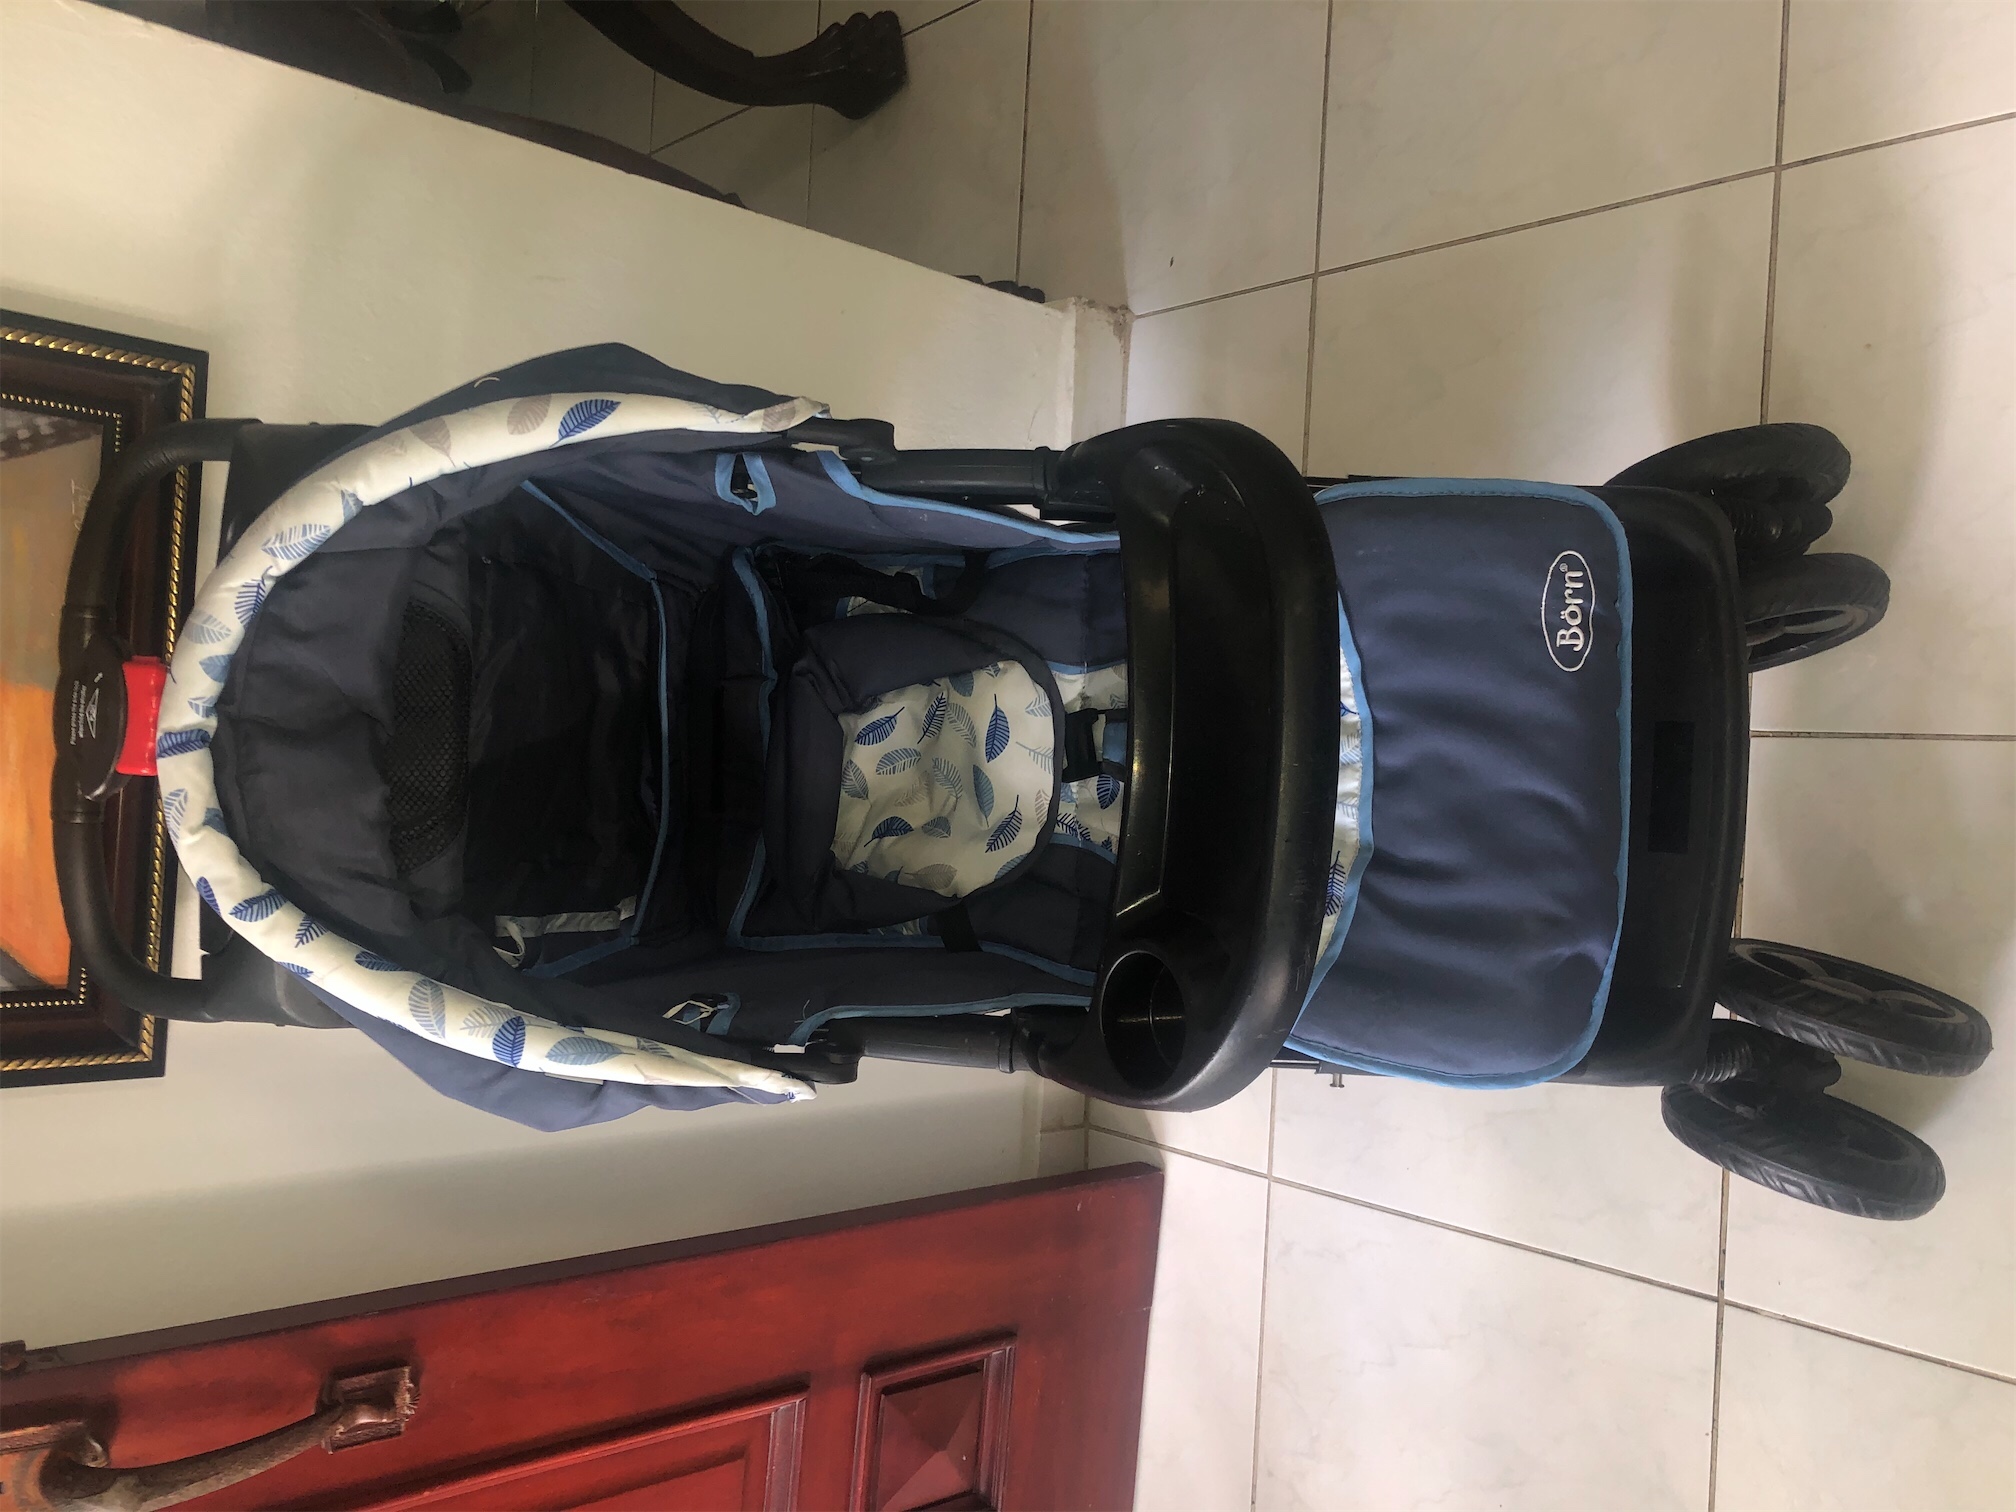 coches y sillas - Coche de bebé